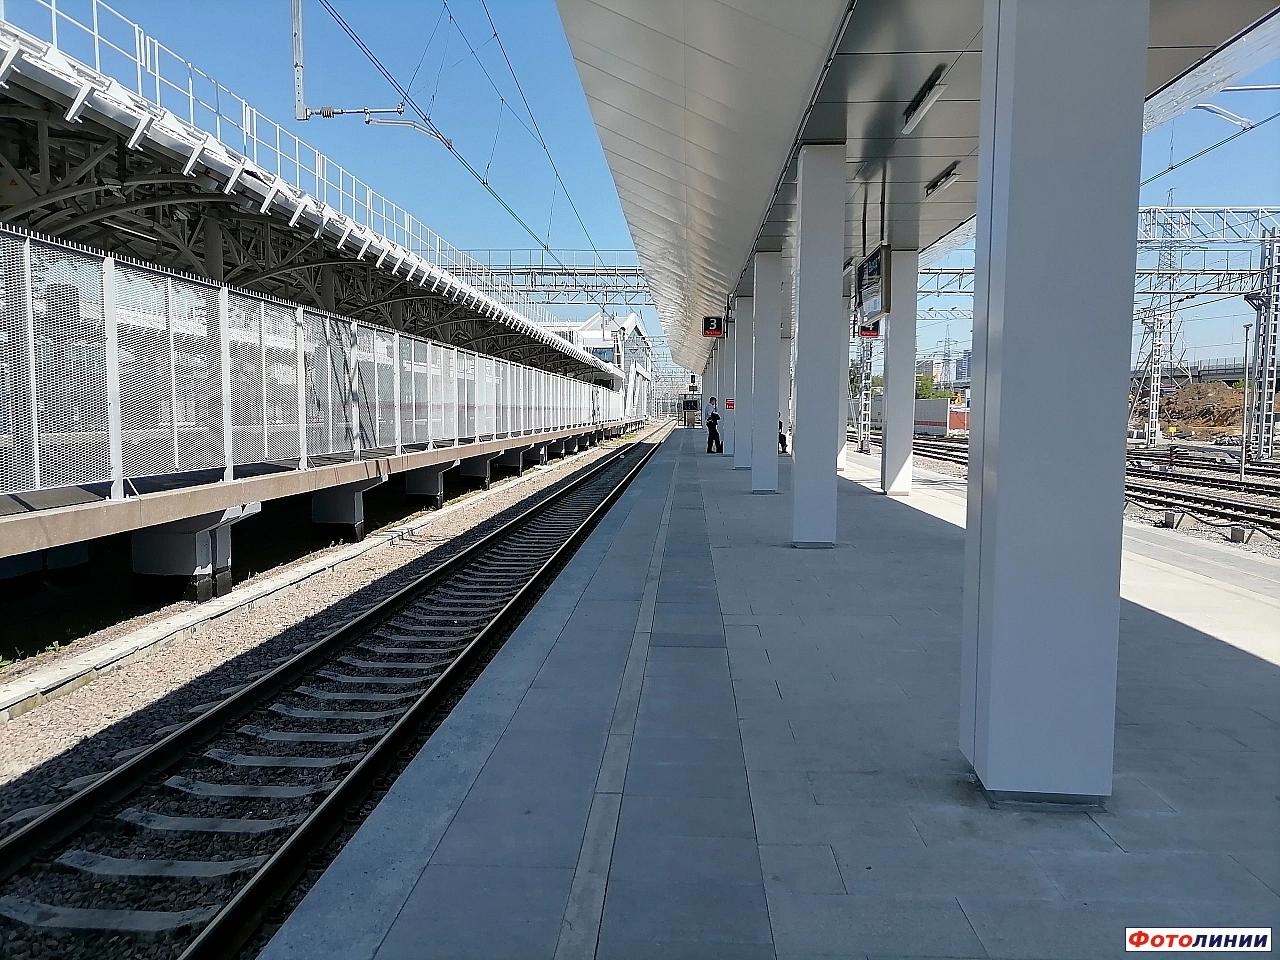 Вид с западной платформы в сторону ст. Белокаменная, слева платформы о.п. Локомотив